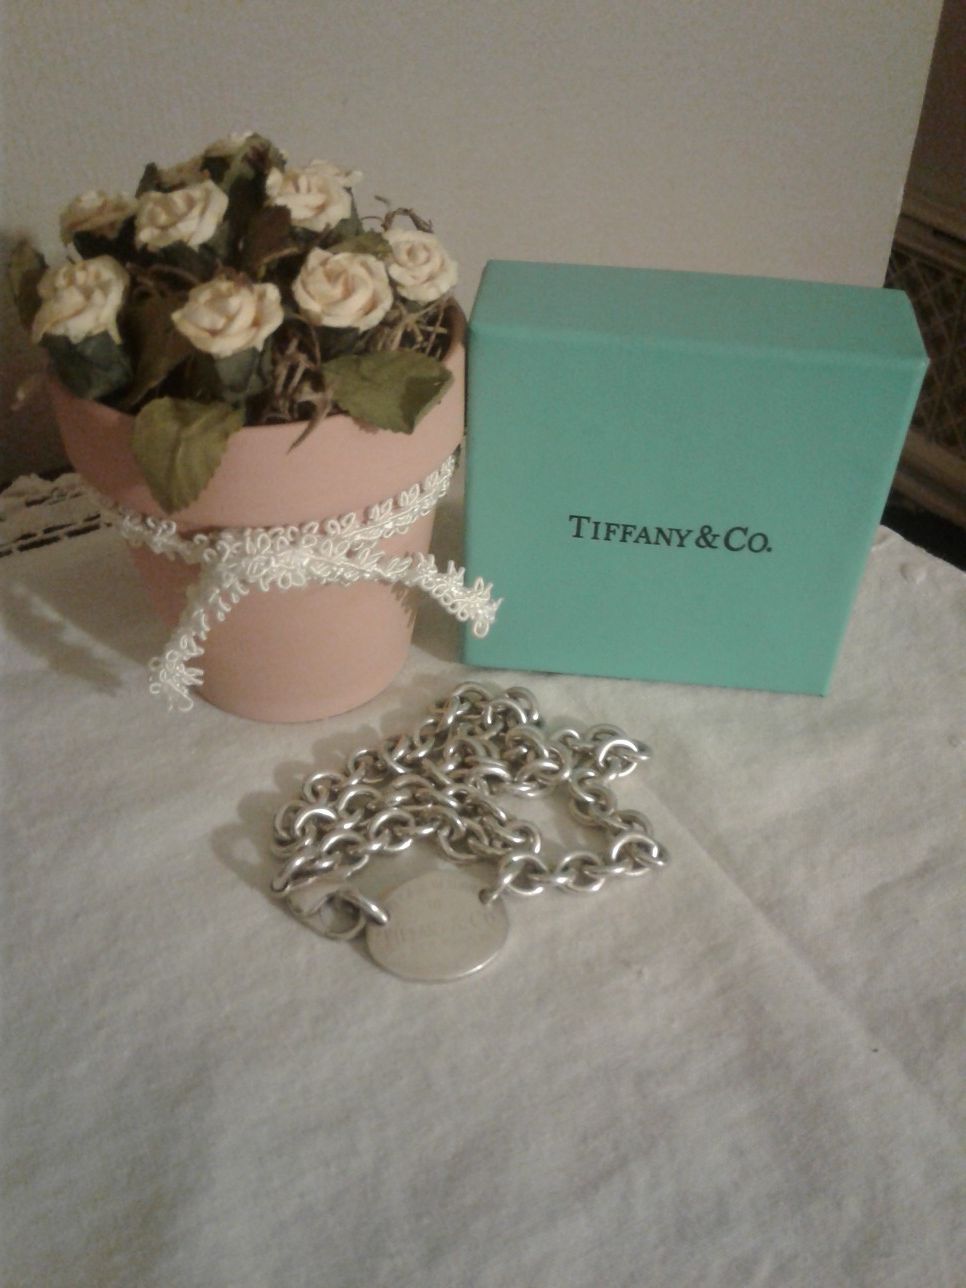 Tiffany & Co choker necklece